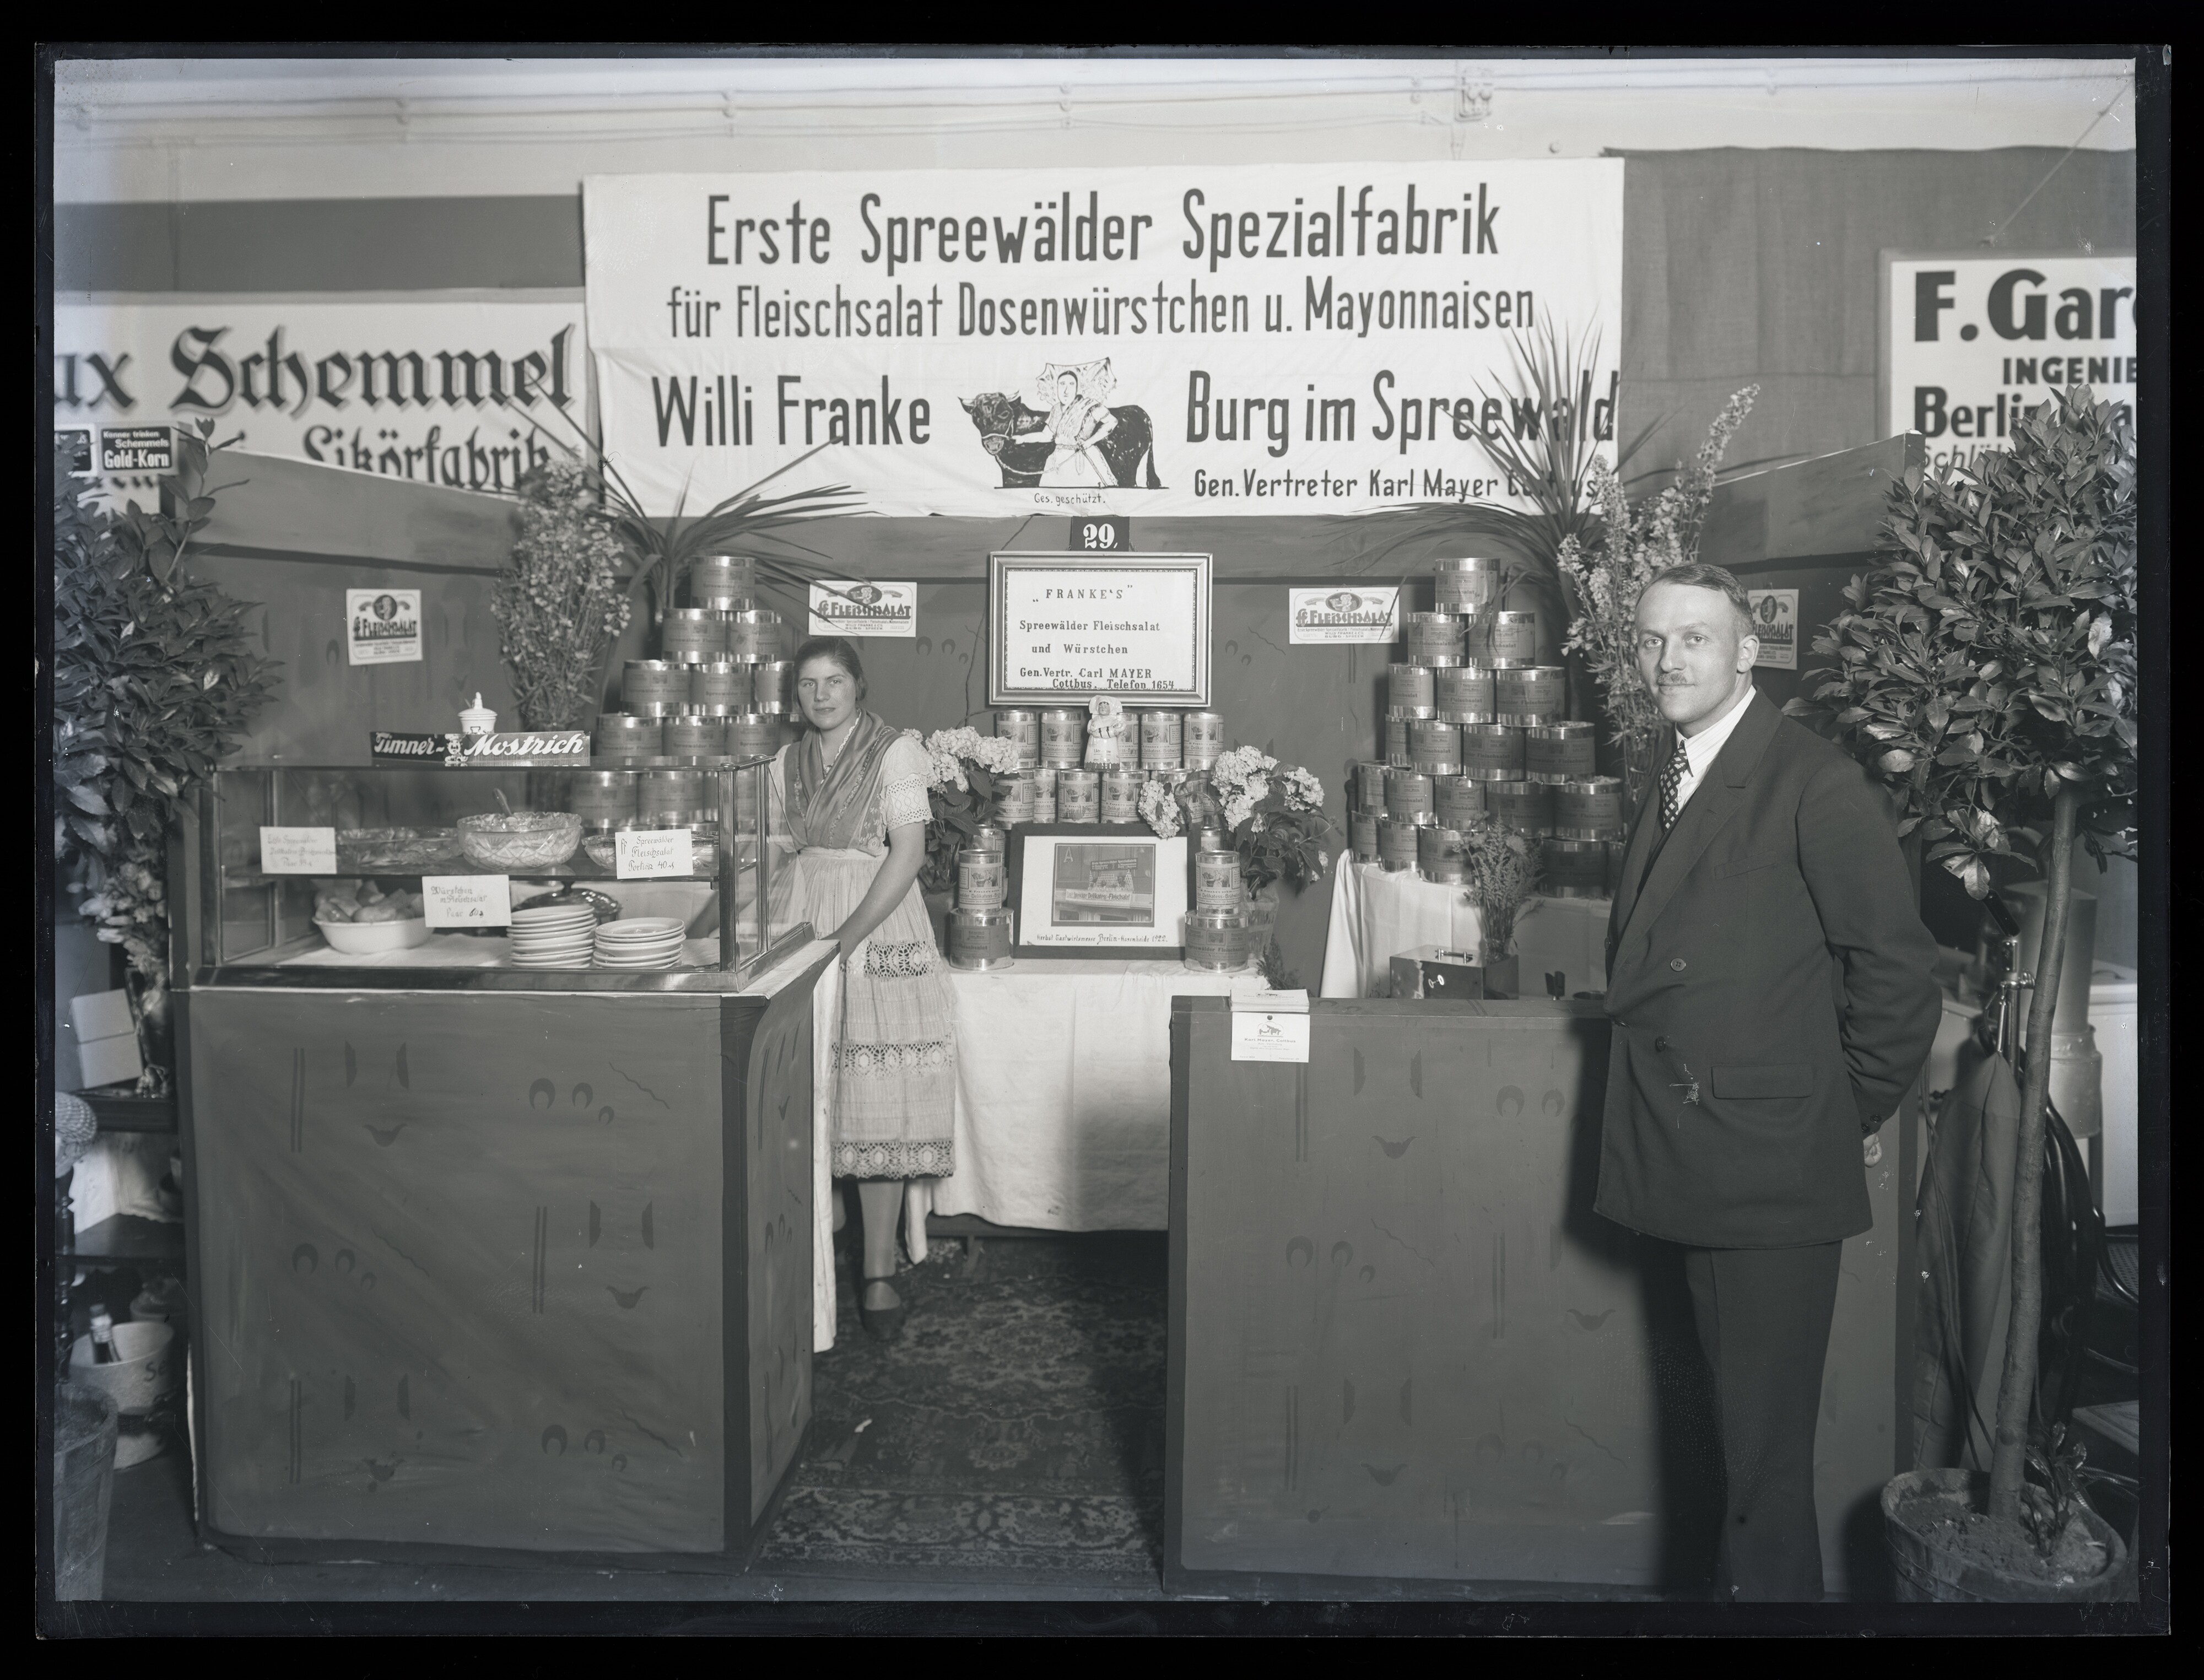 Ausstellung des Gastwirtschaftsfach und verwandte Gewerbe (Gaco) 1927 in Cottbus / Stand der Fa. "Erste Spreewälder Spezialfabrik Willi Franke" (Stadtmuseum Cottbus CC BY-NC-SA)